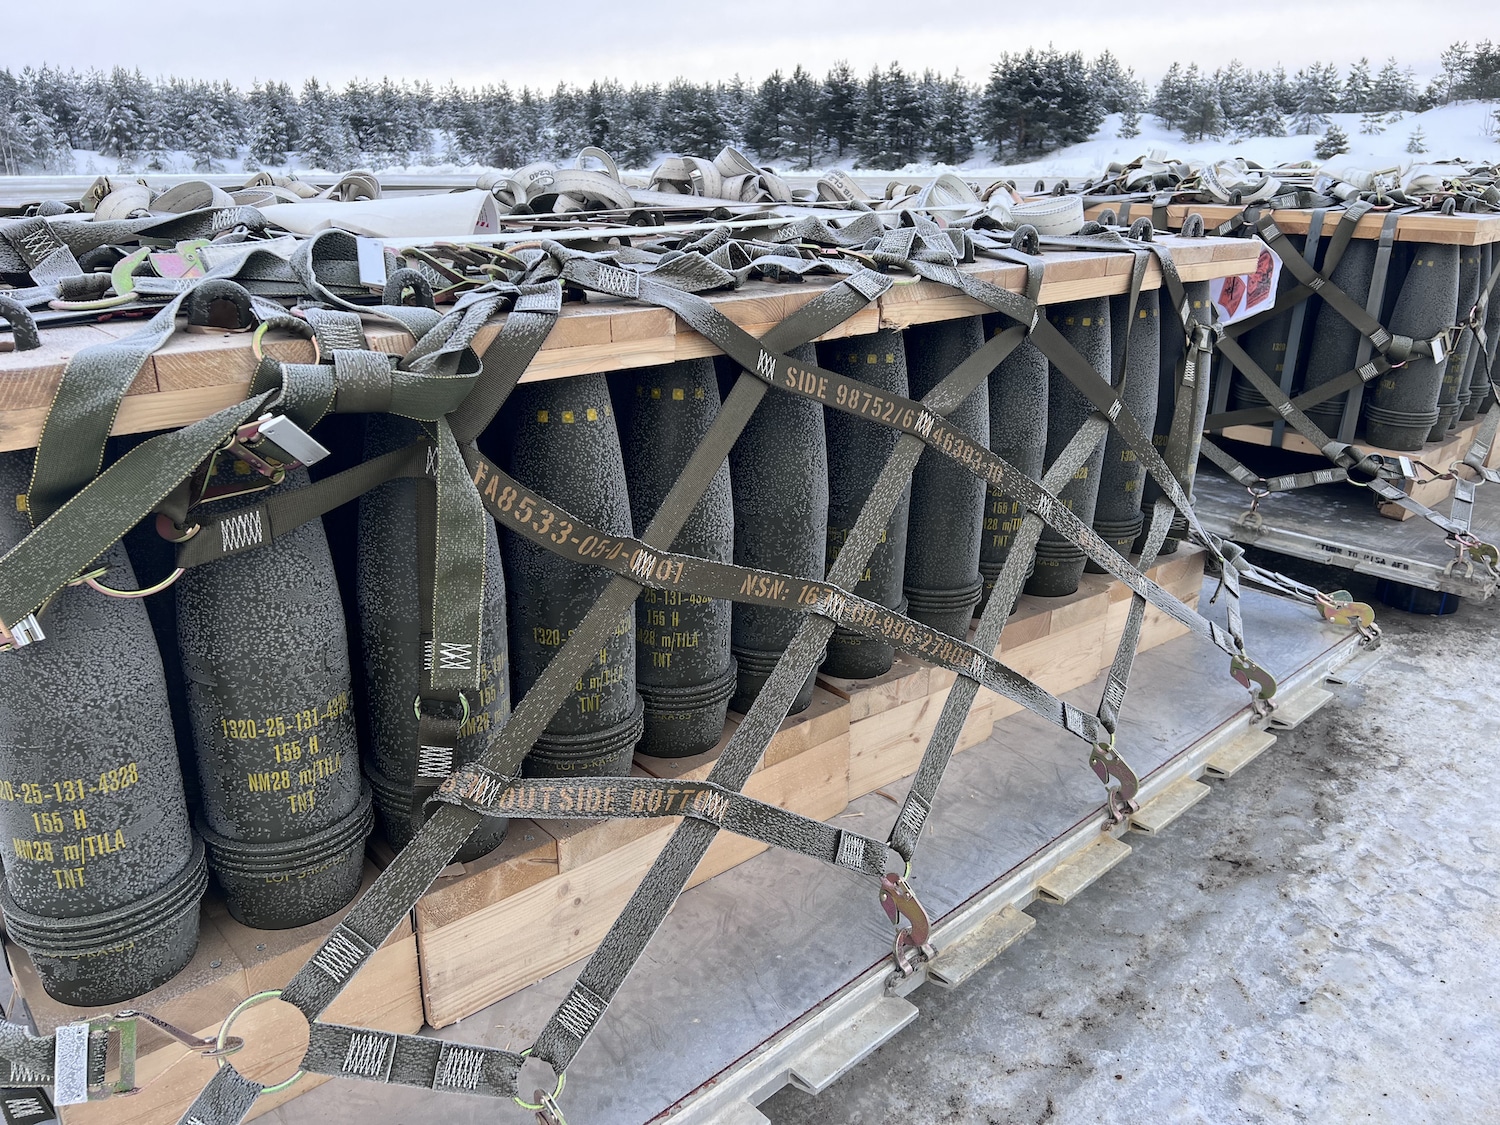 Norway handed over 10,000 artillery shells to Ukraine